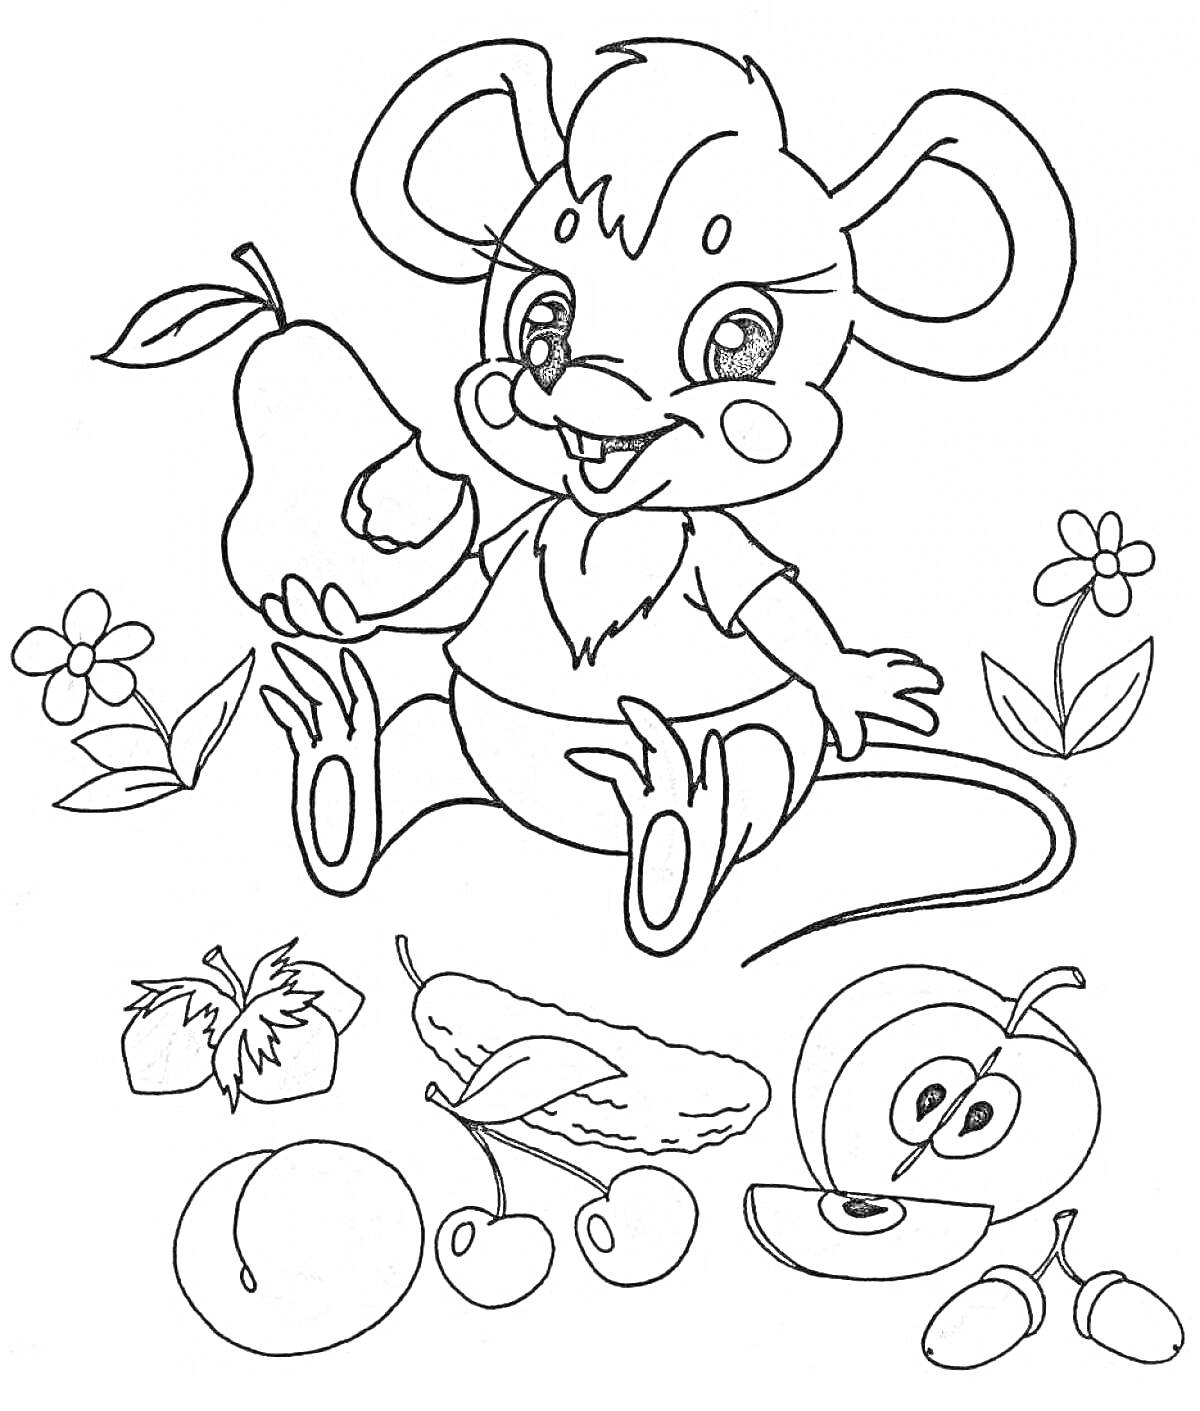 Раскраска Мышонок с грушей и фруктами (мышонок, груша, цветы, фрукты: клубника, огурец, вишня, яблоко, персик)